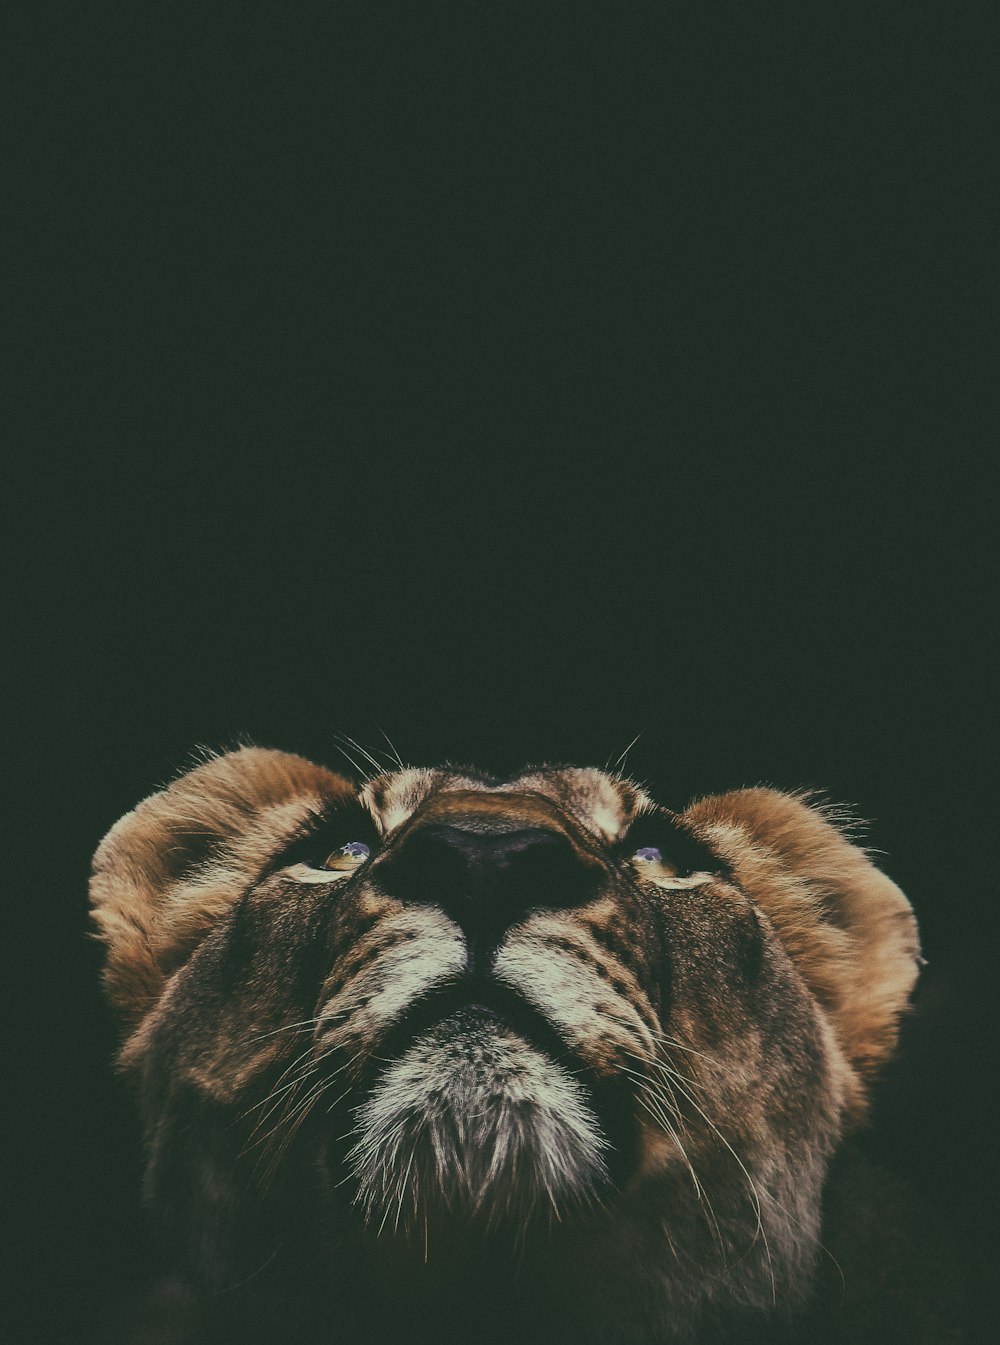 Brauner Löwe schaut nach oben in der Makroobjektivfotografie